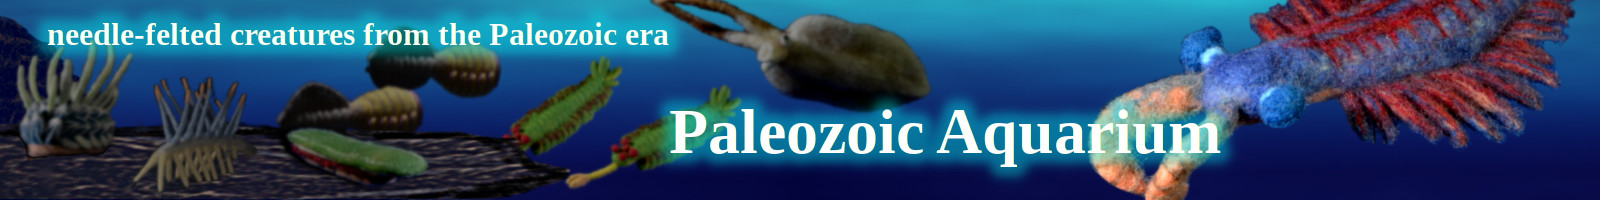 paleozoic aquarium banner